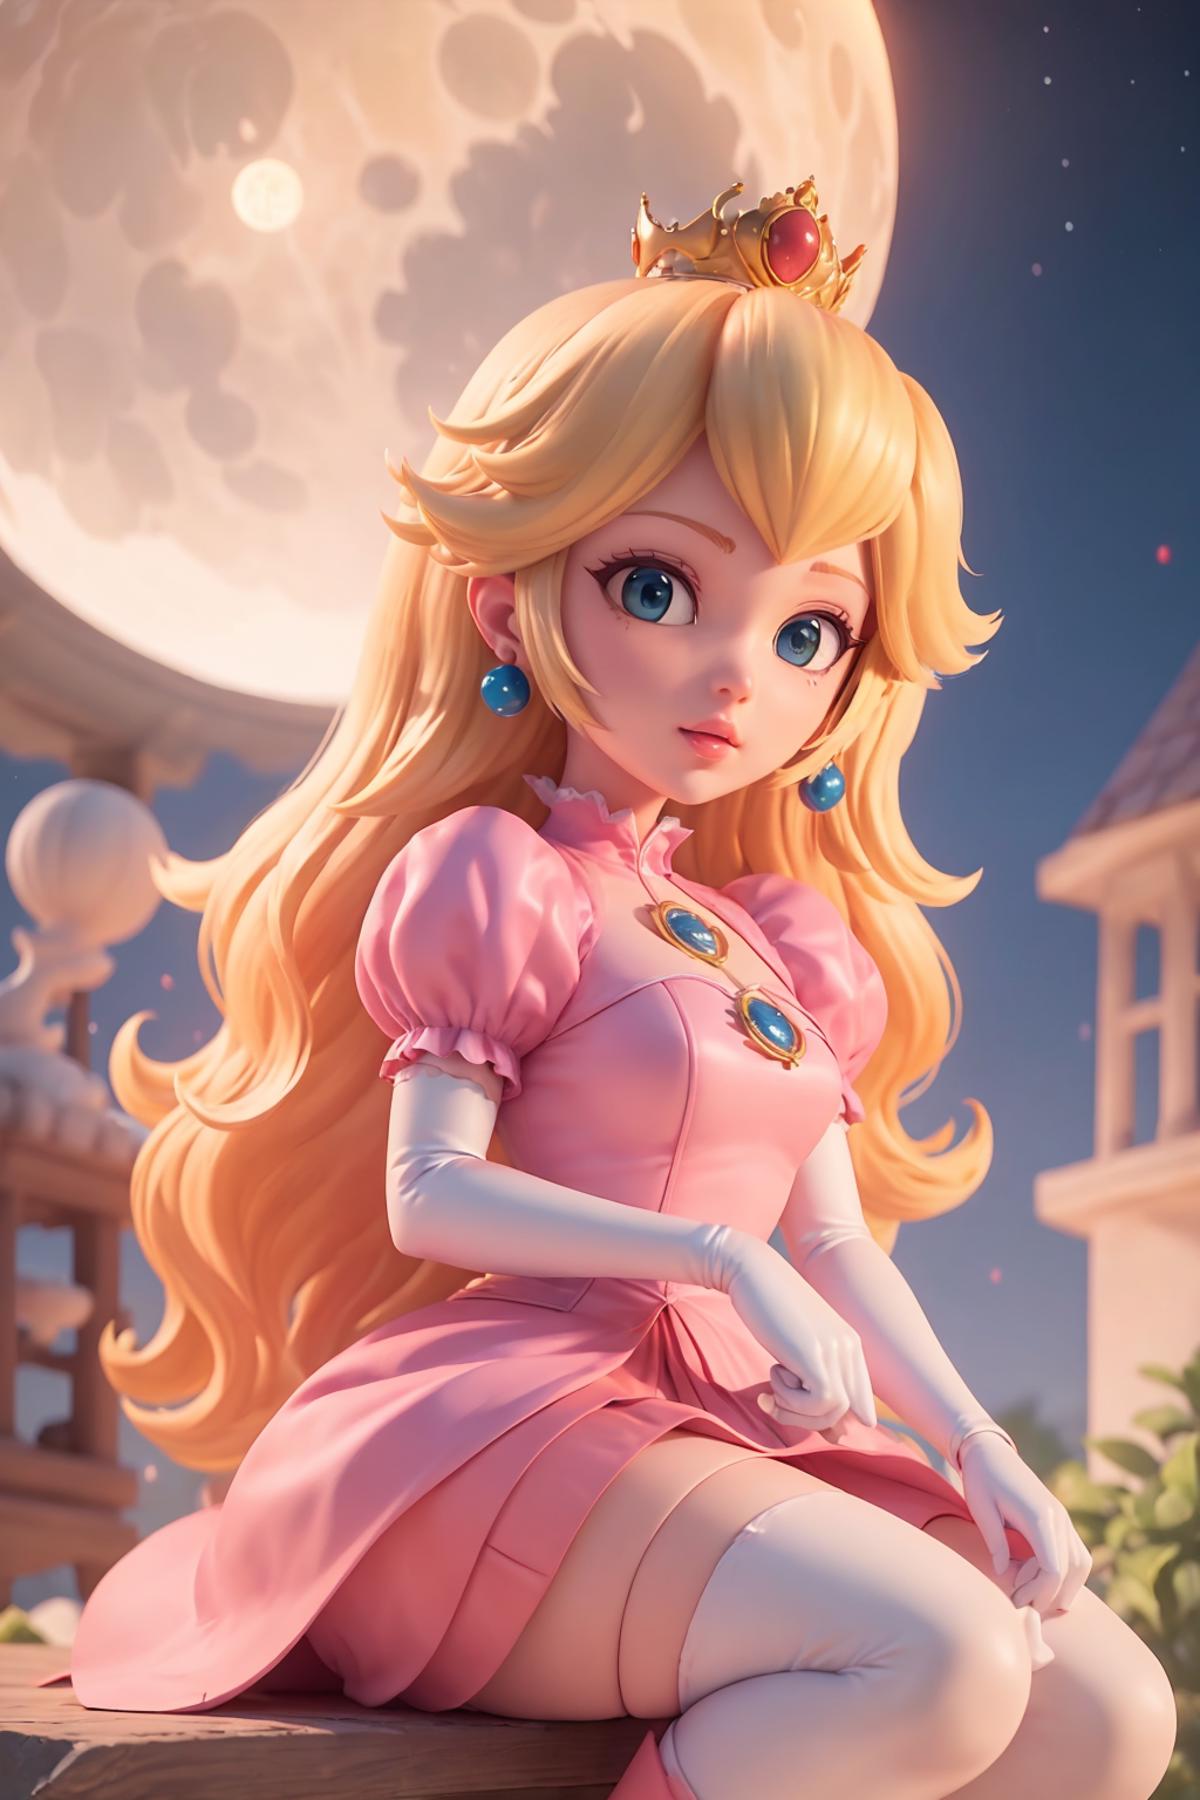 Princess Peach (Mario Movie) image by disti001